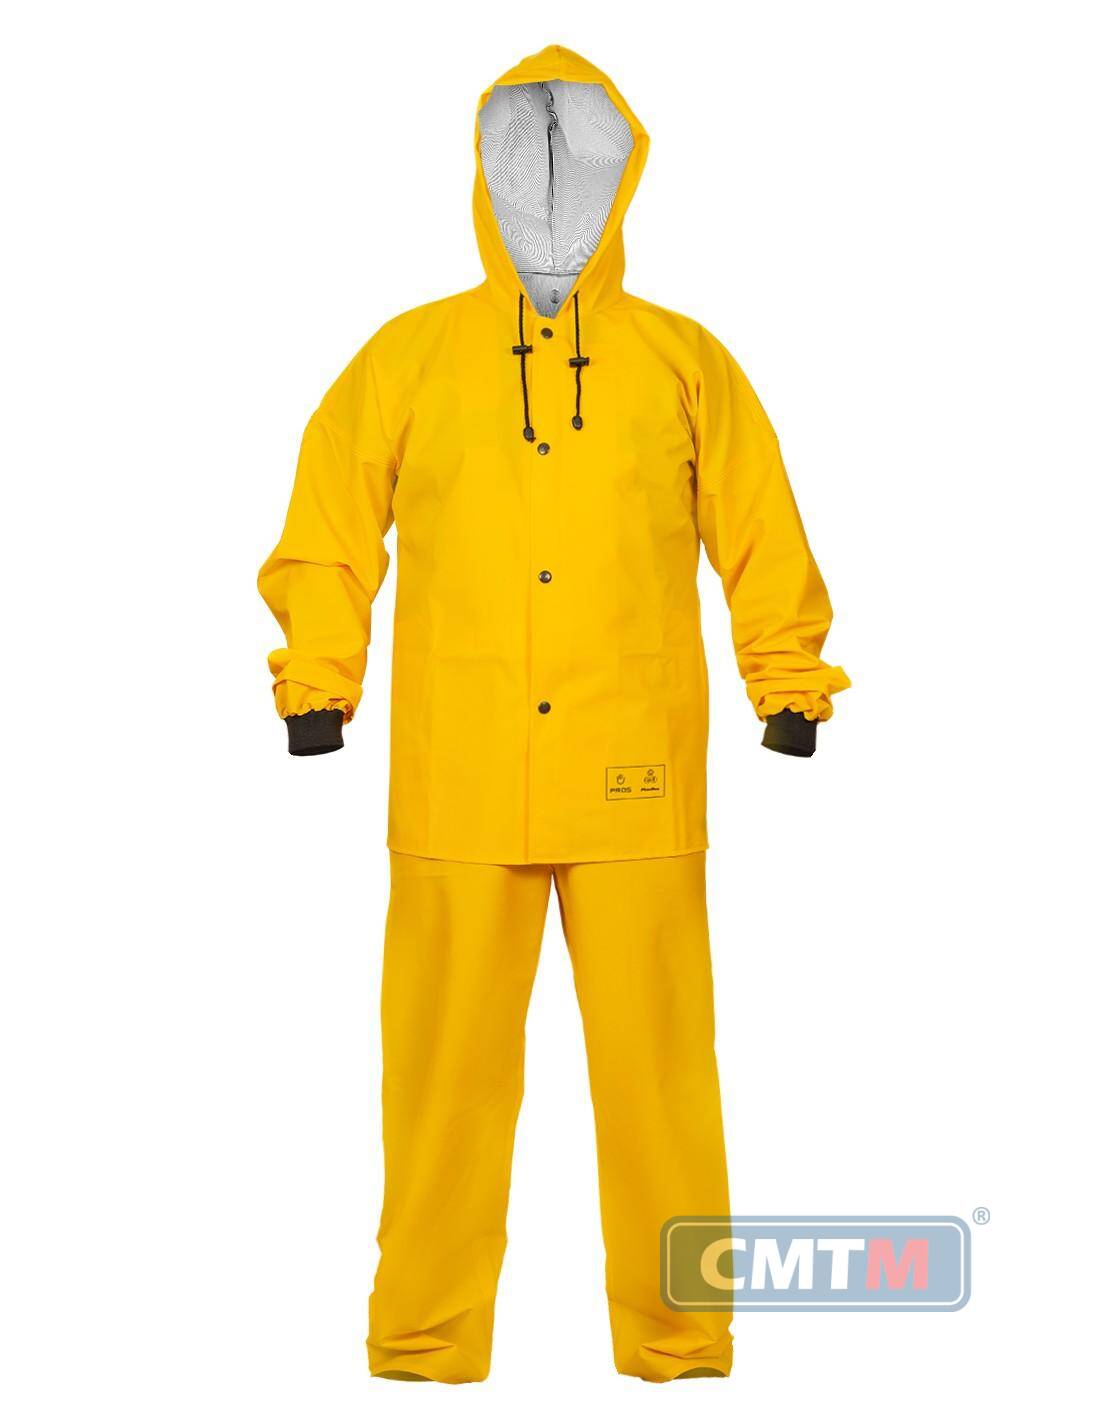 Ubranie wodoochronne AJ 101/001 żółte, rozmiar 56 XL